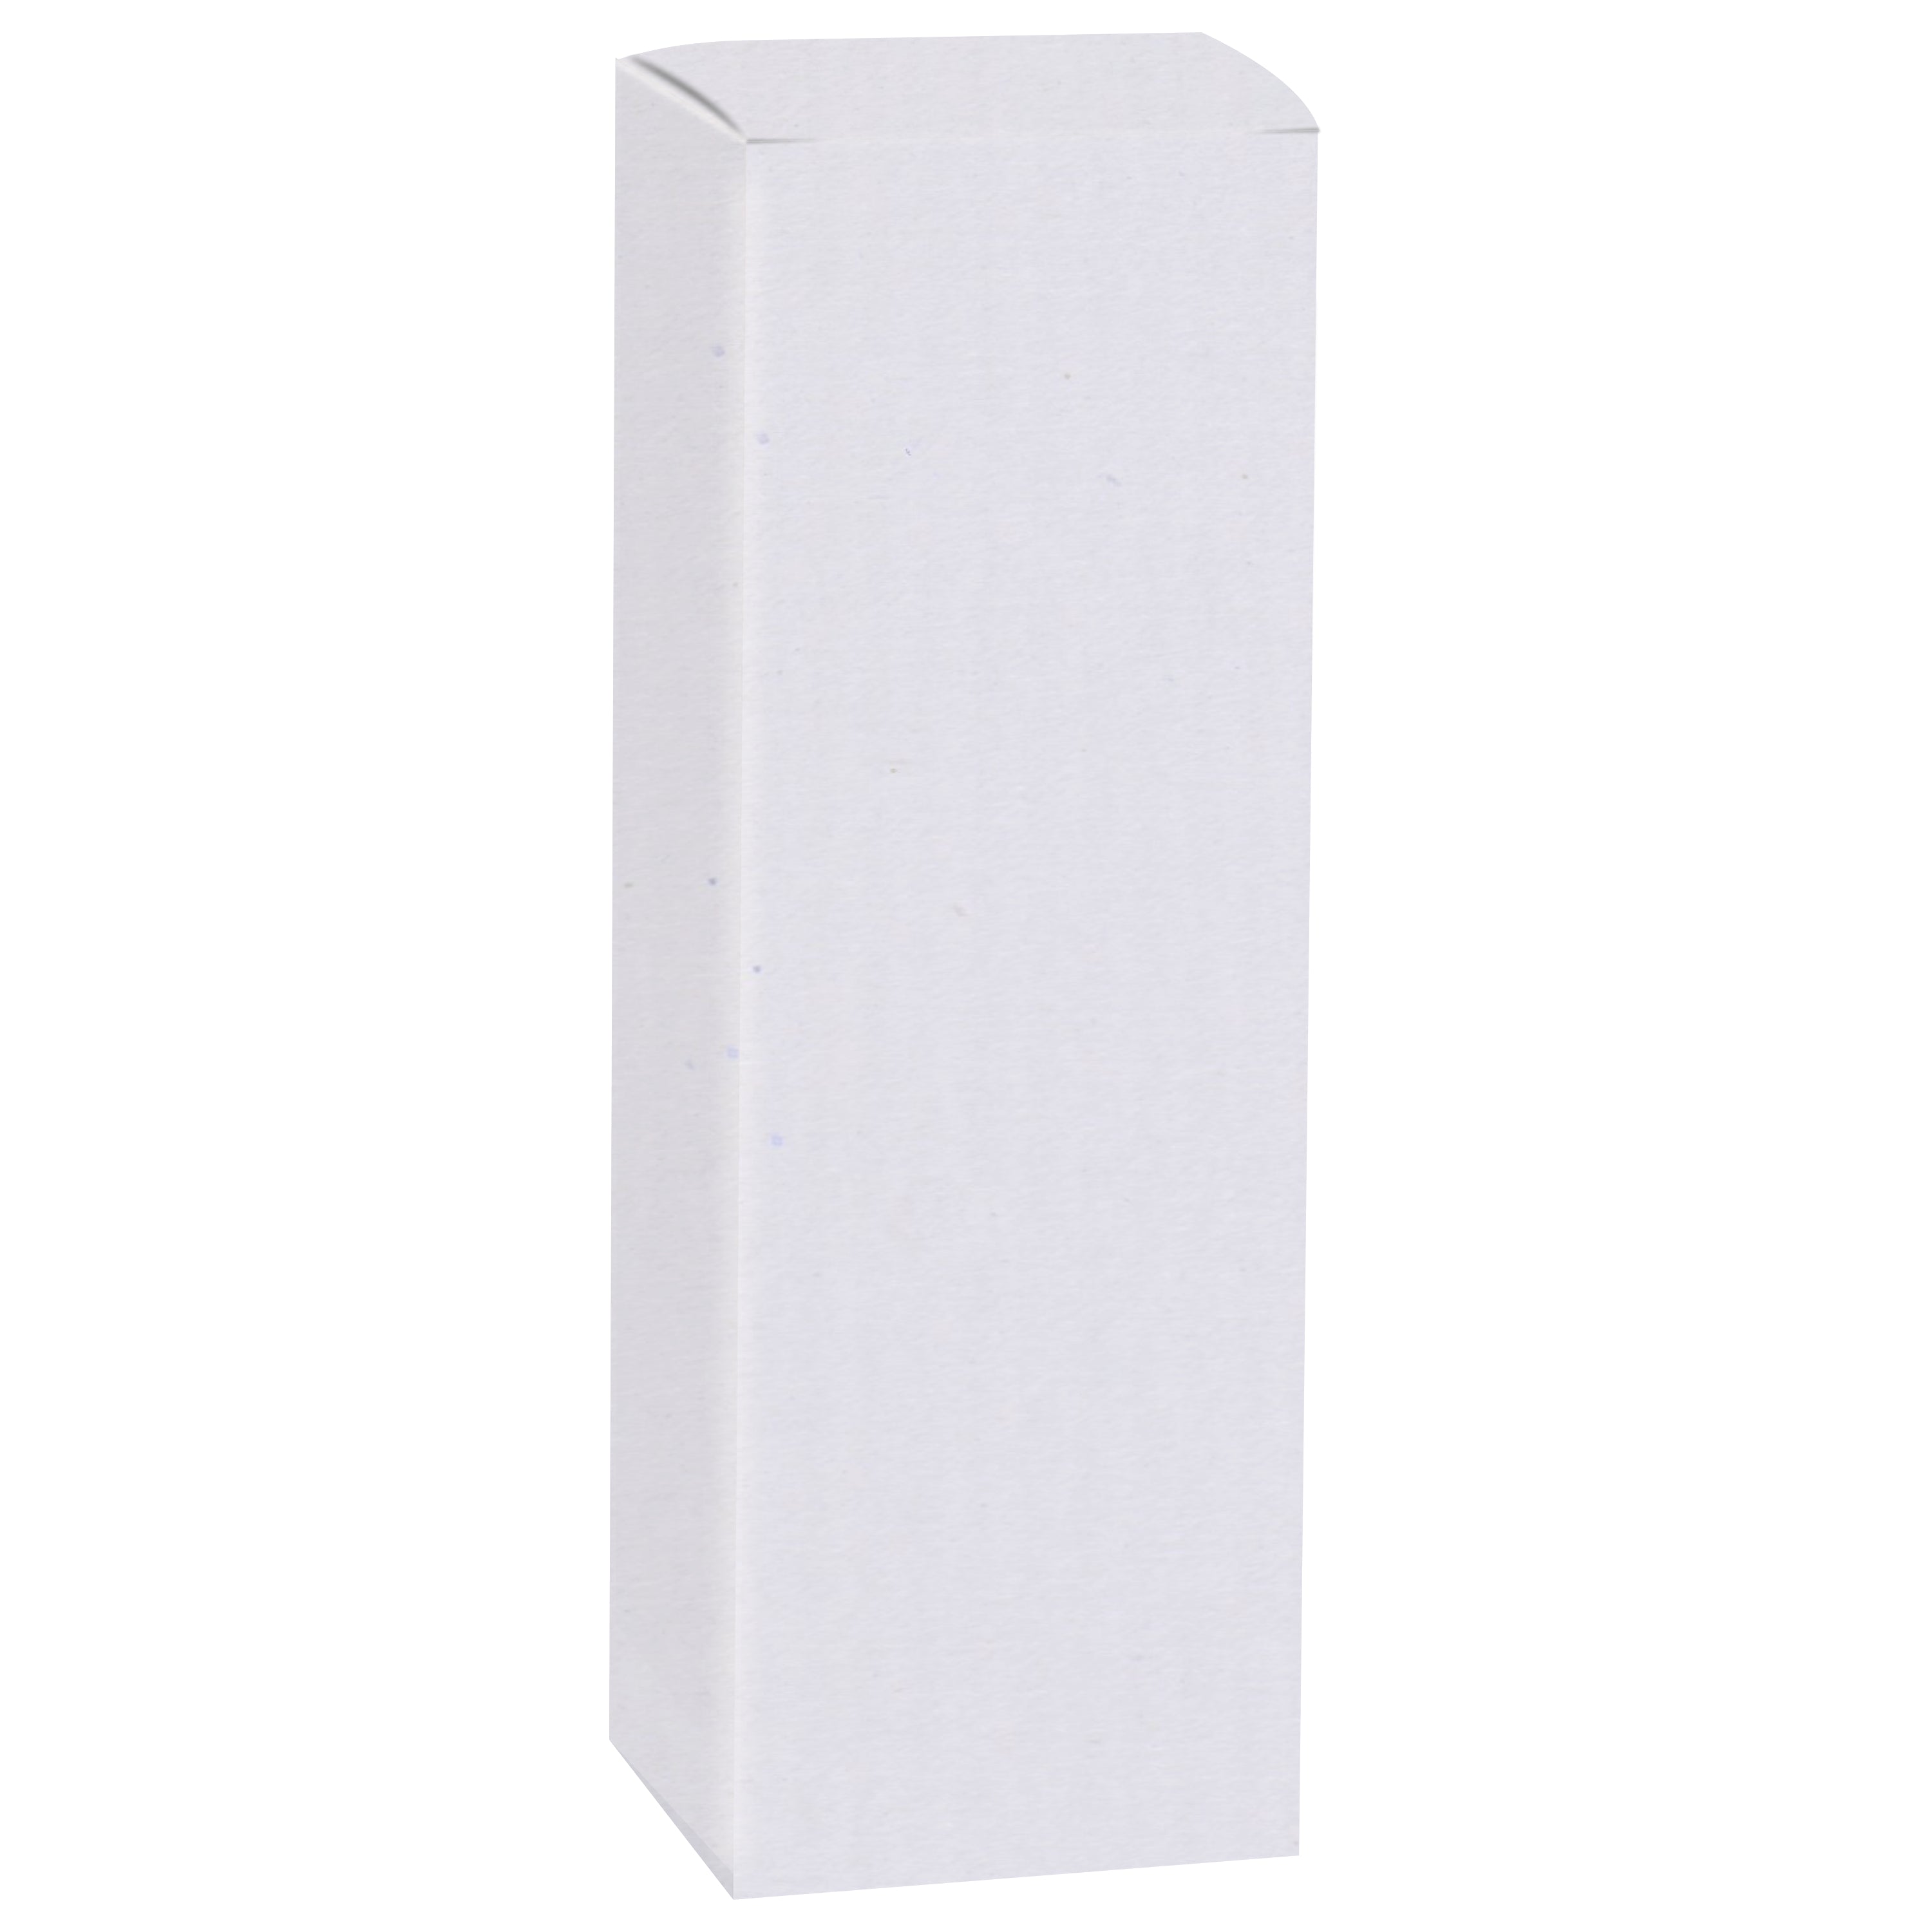 Zenvista Premium White Corrugated Box |11 x 4 x 4 cm | Pack of 10